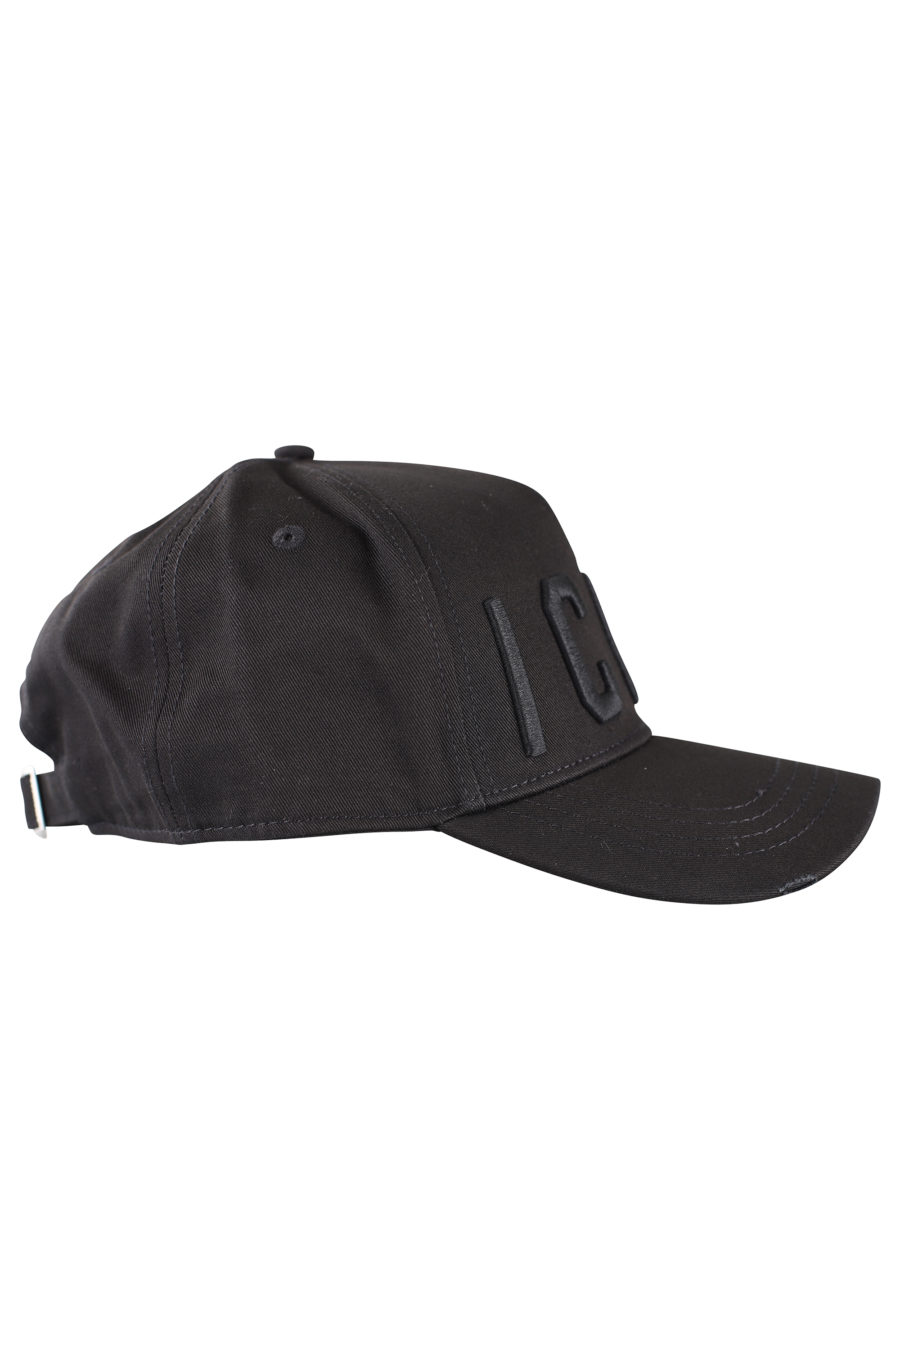 Gorra negra ajustable con logo "icon" negro - IMG 9969